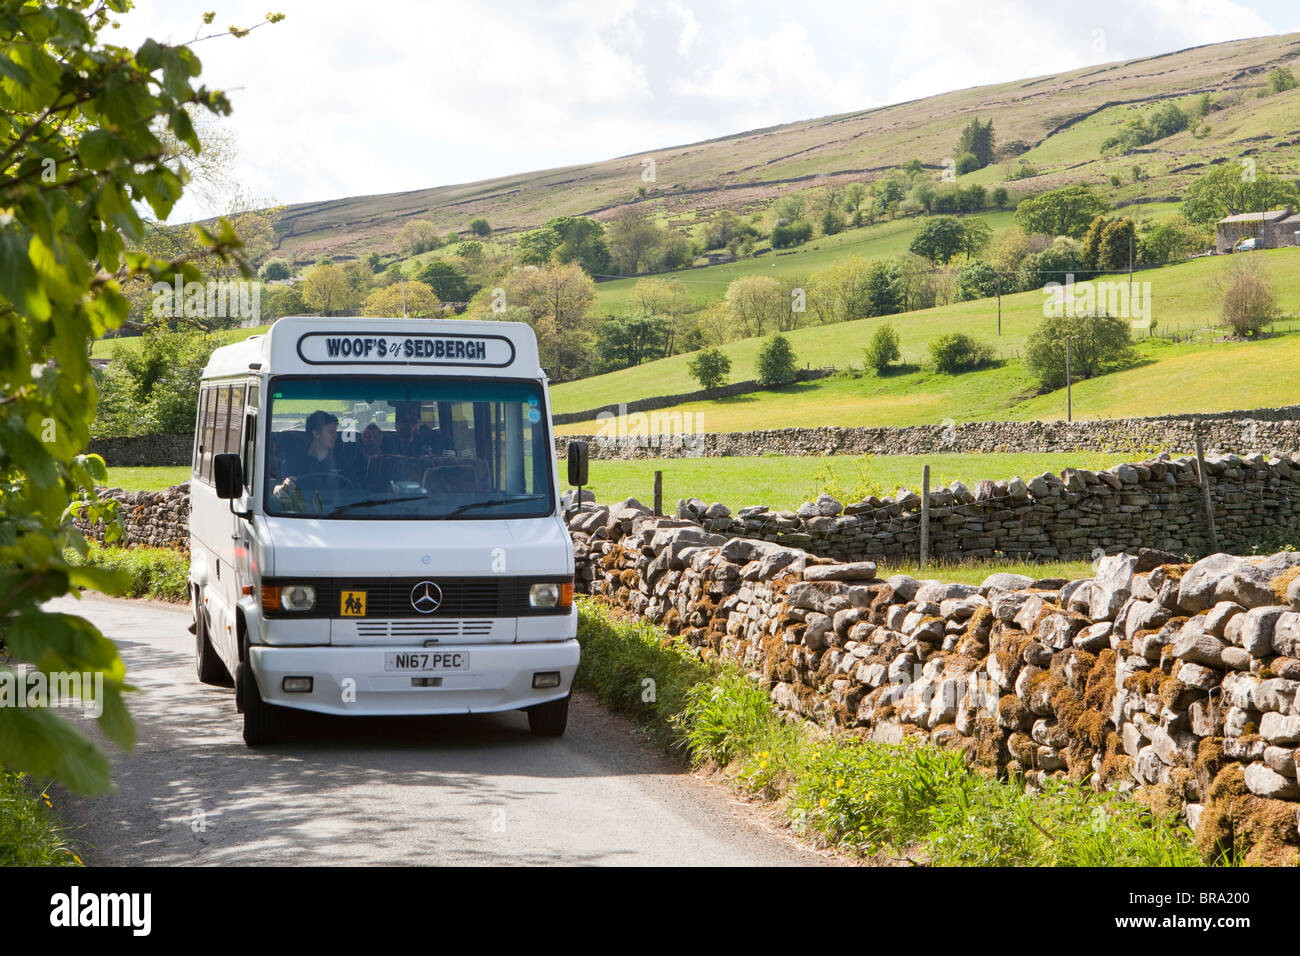 Servicio local de autobuses familiares que operan en Dentdale, cerca de Cowgill, en el Parque Nacional Yorkshire Dales, al este de Dent, Cumbria, Reino Unido Foto de stock